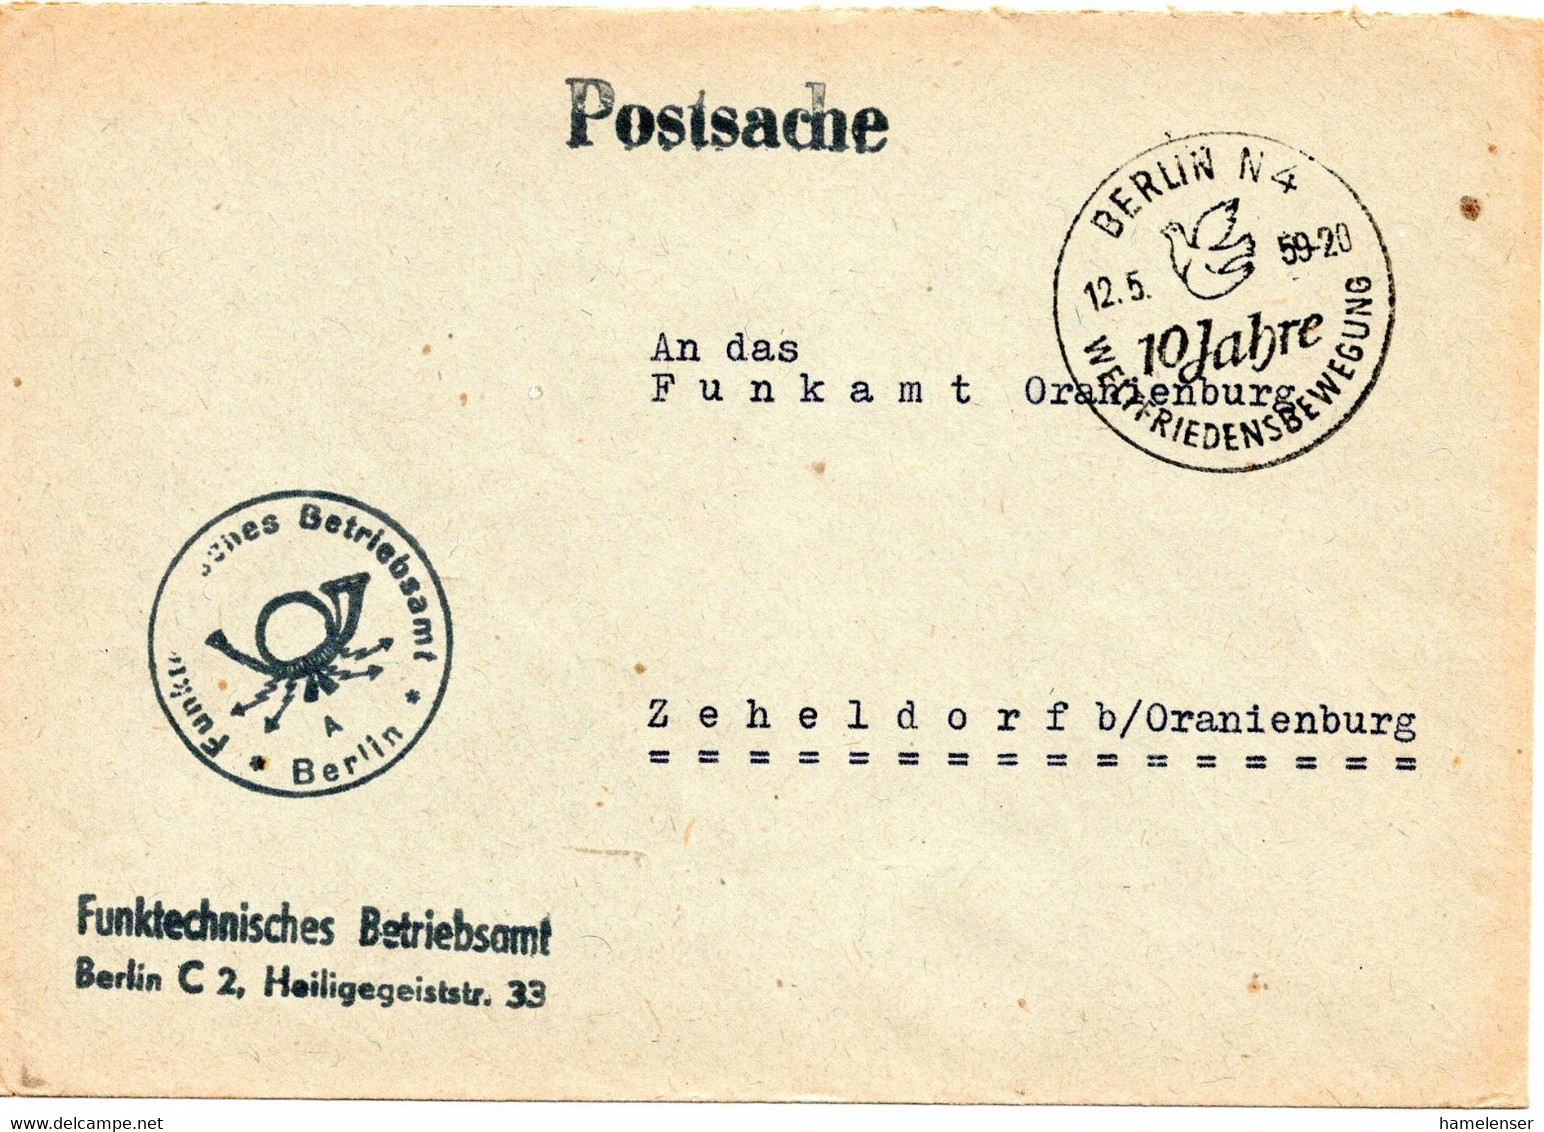 62755 - DDR - 1959 - "Postsache"-Bf BERLIN - 10 JAHRE WELTFRIEDENSBEWEGUNG -> Zeheldorf - Briefe U. Dokumente